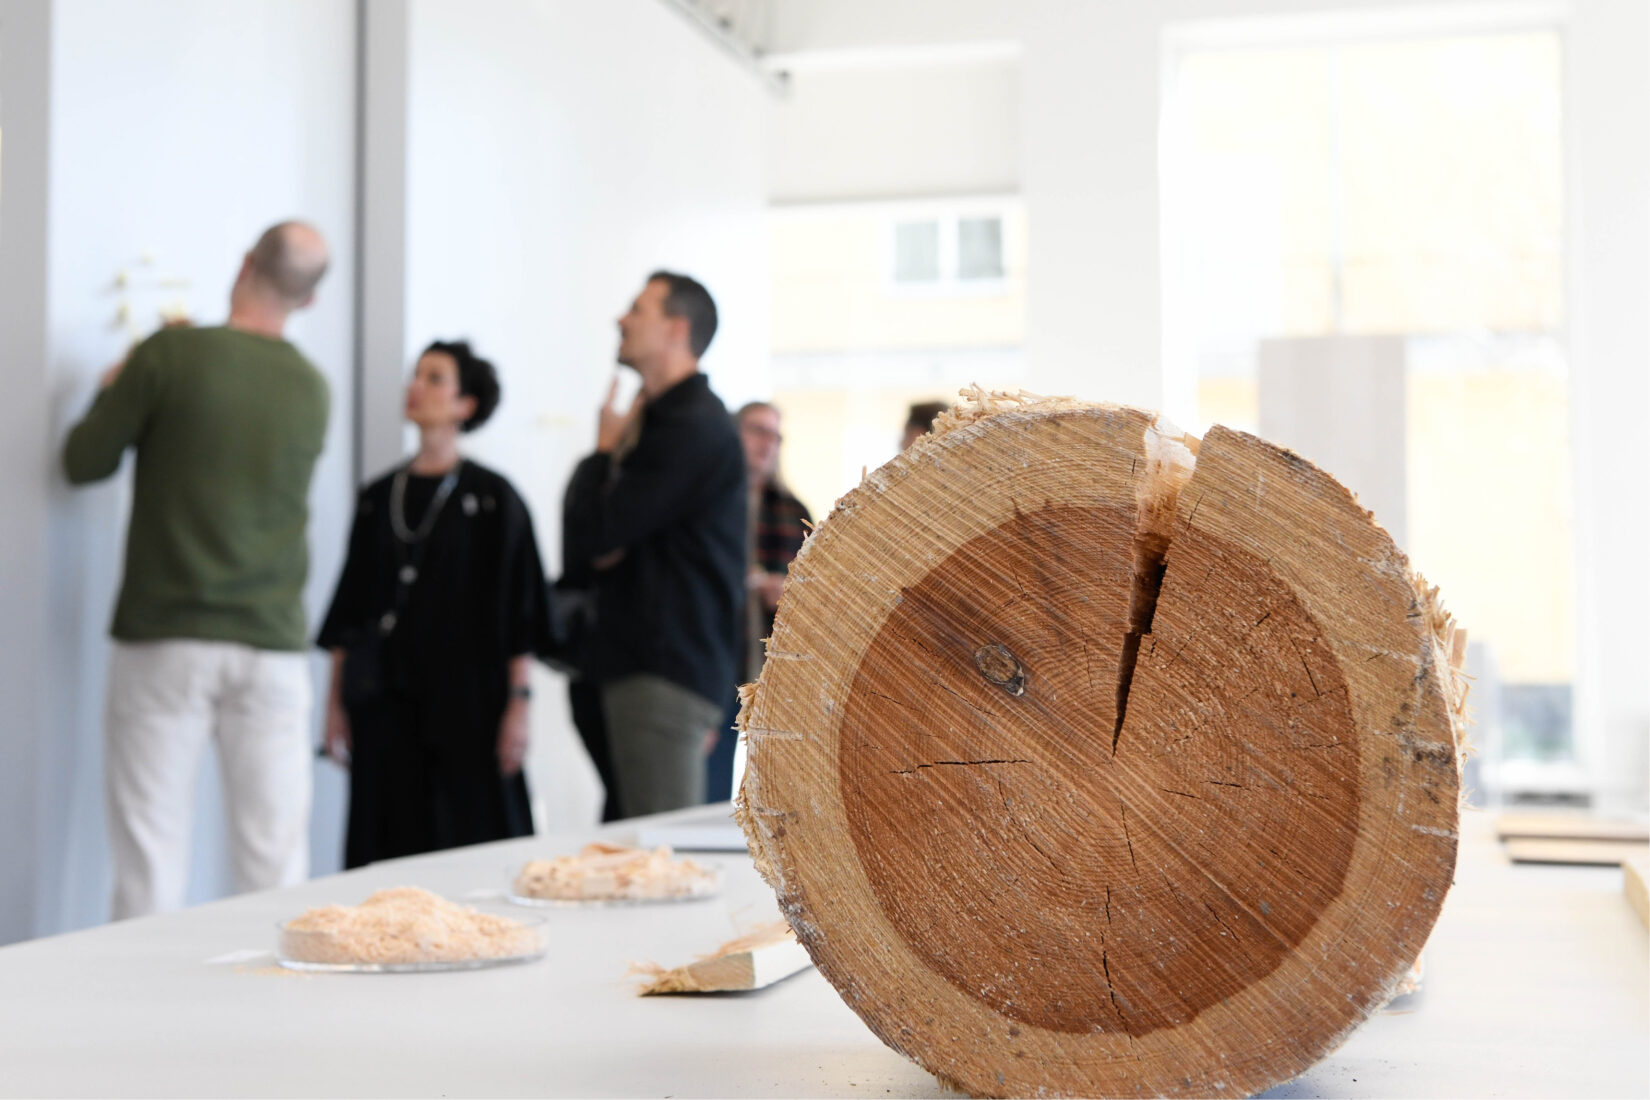 Un tronc d'arbre et différents prototypes en bois sont placés sur une table et des gens discutent à l'arrière-plan.